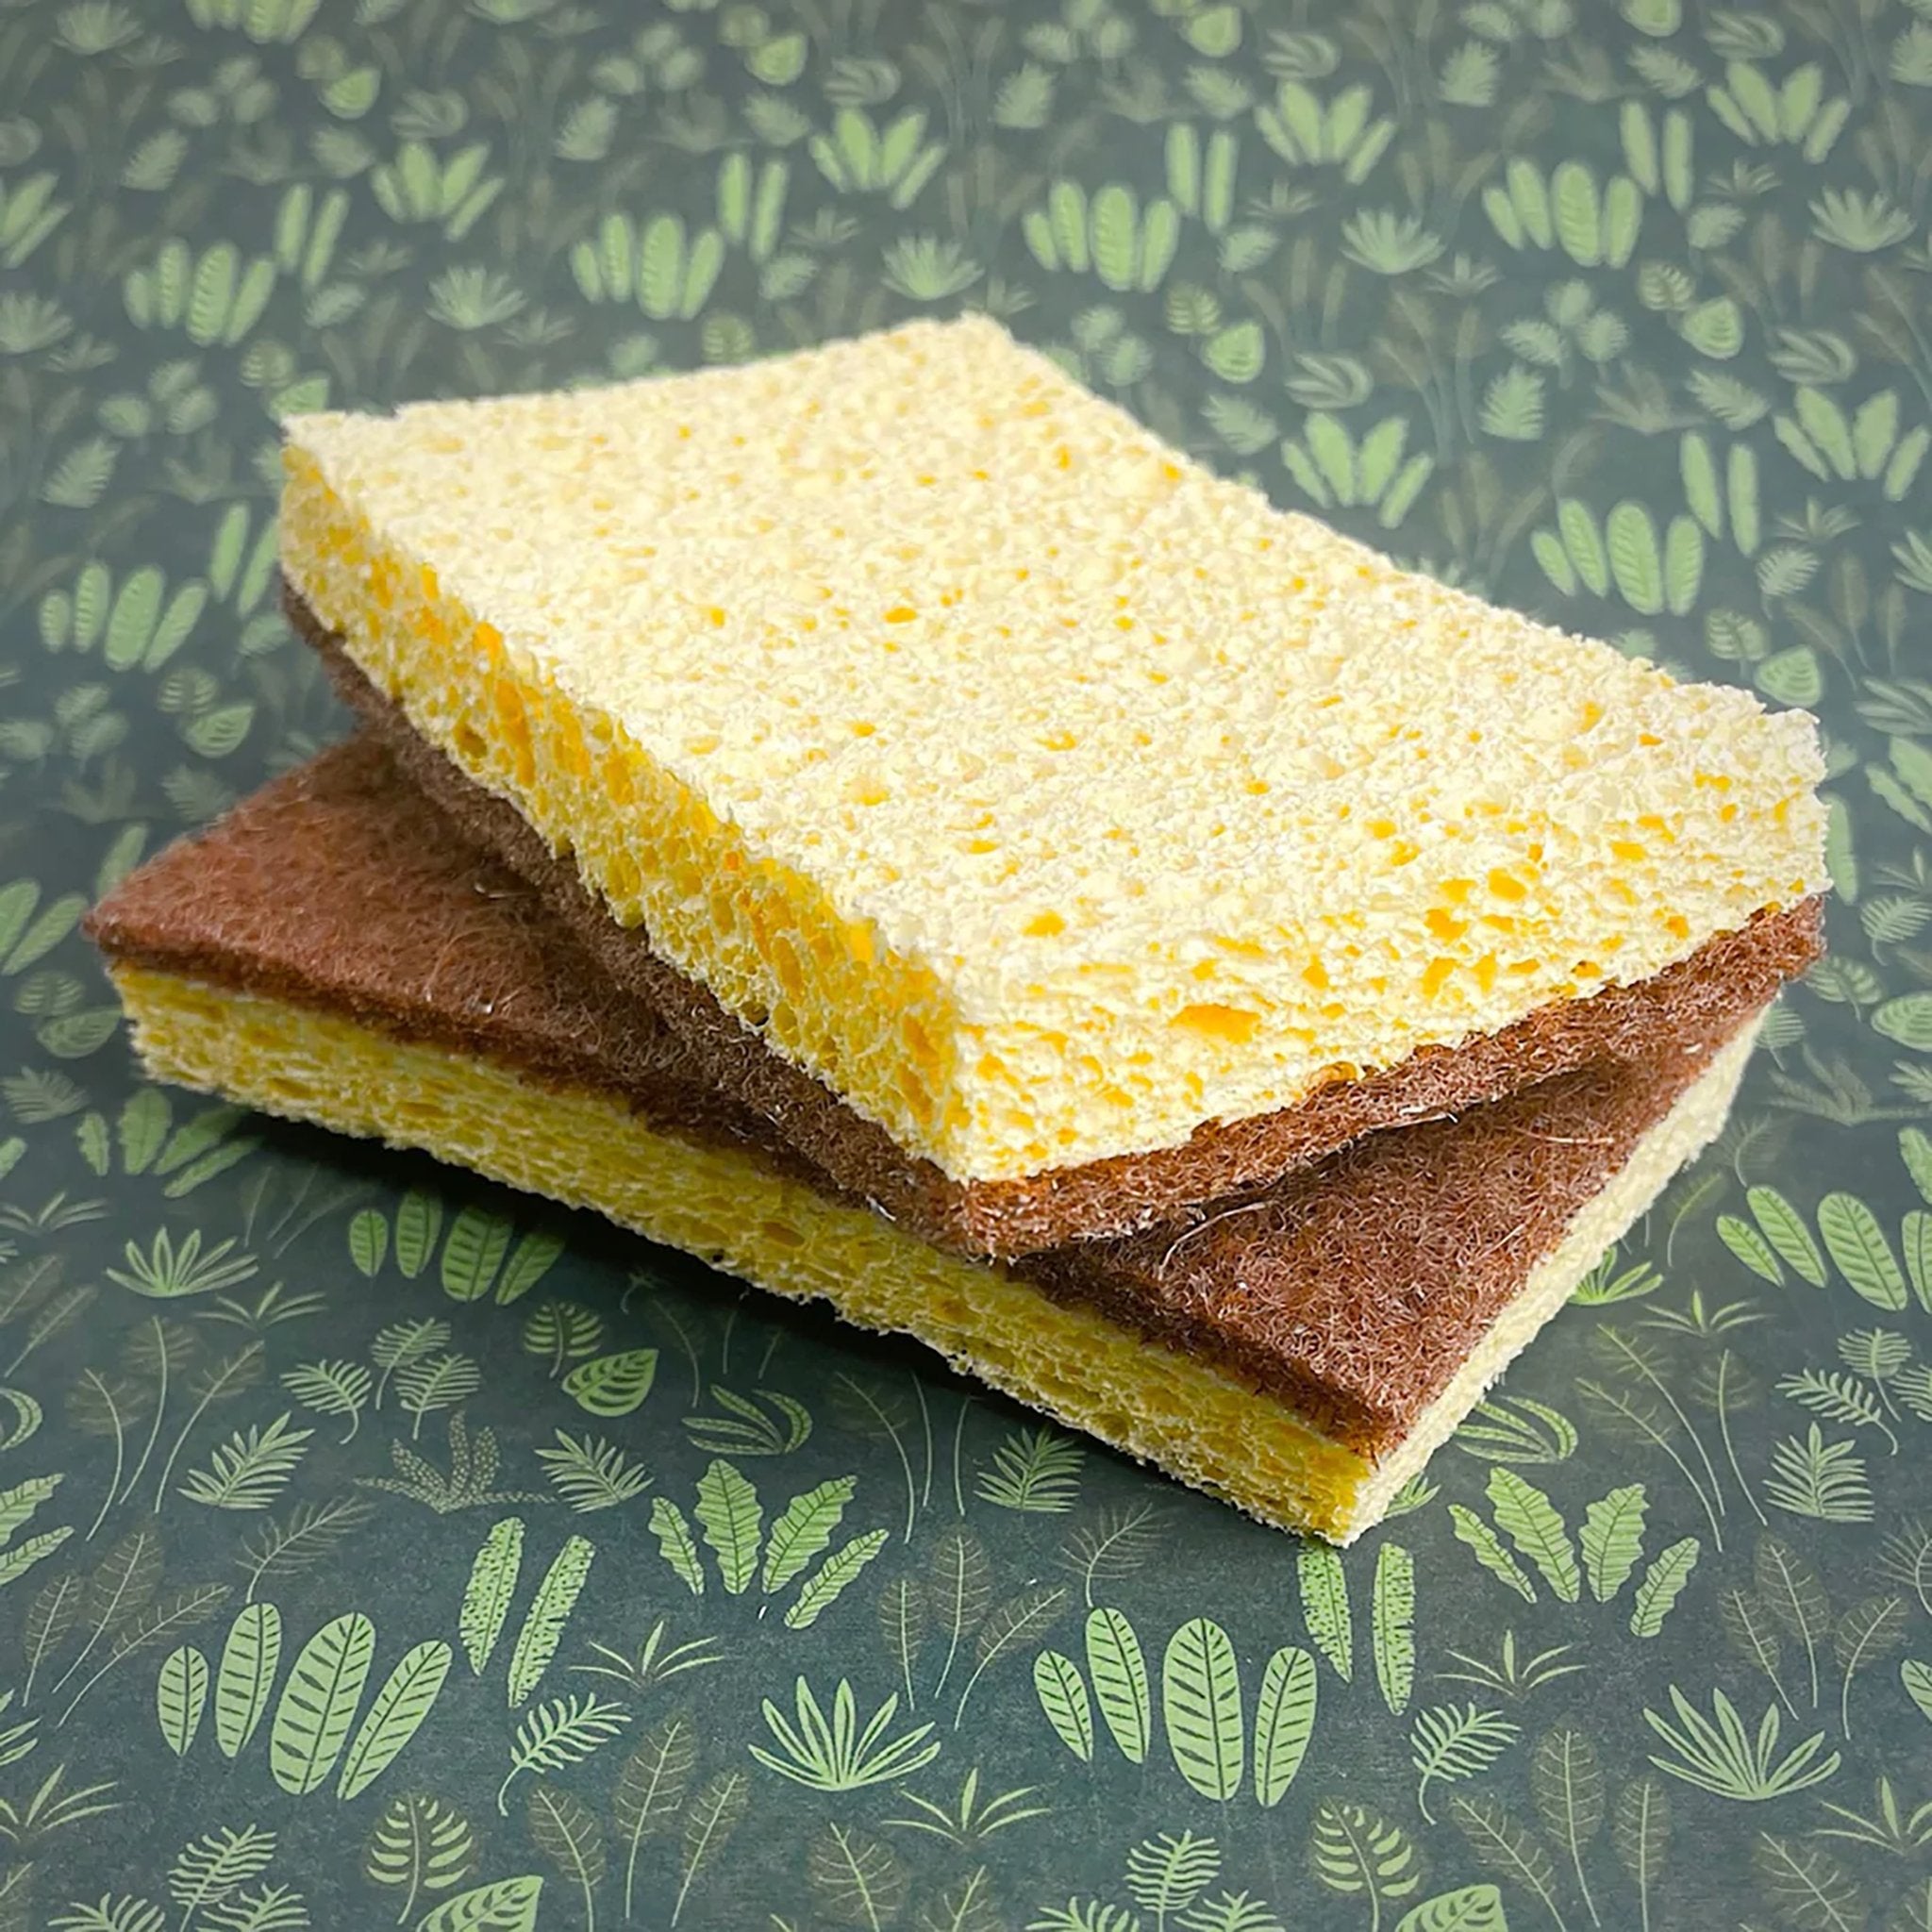 NEW Kitchen Sponge - mypure.co.uk